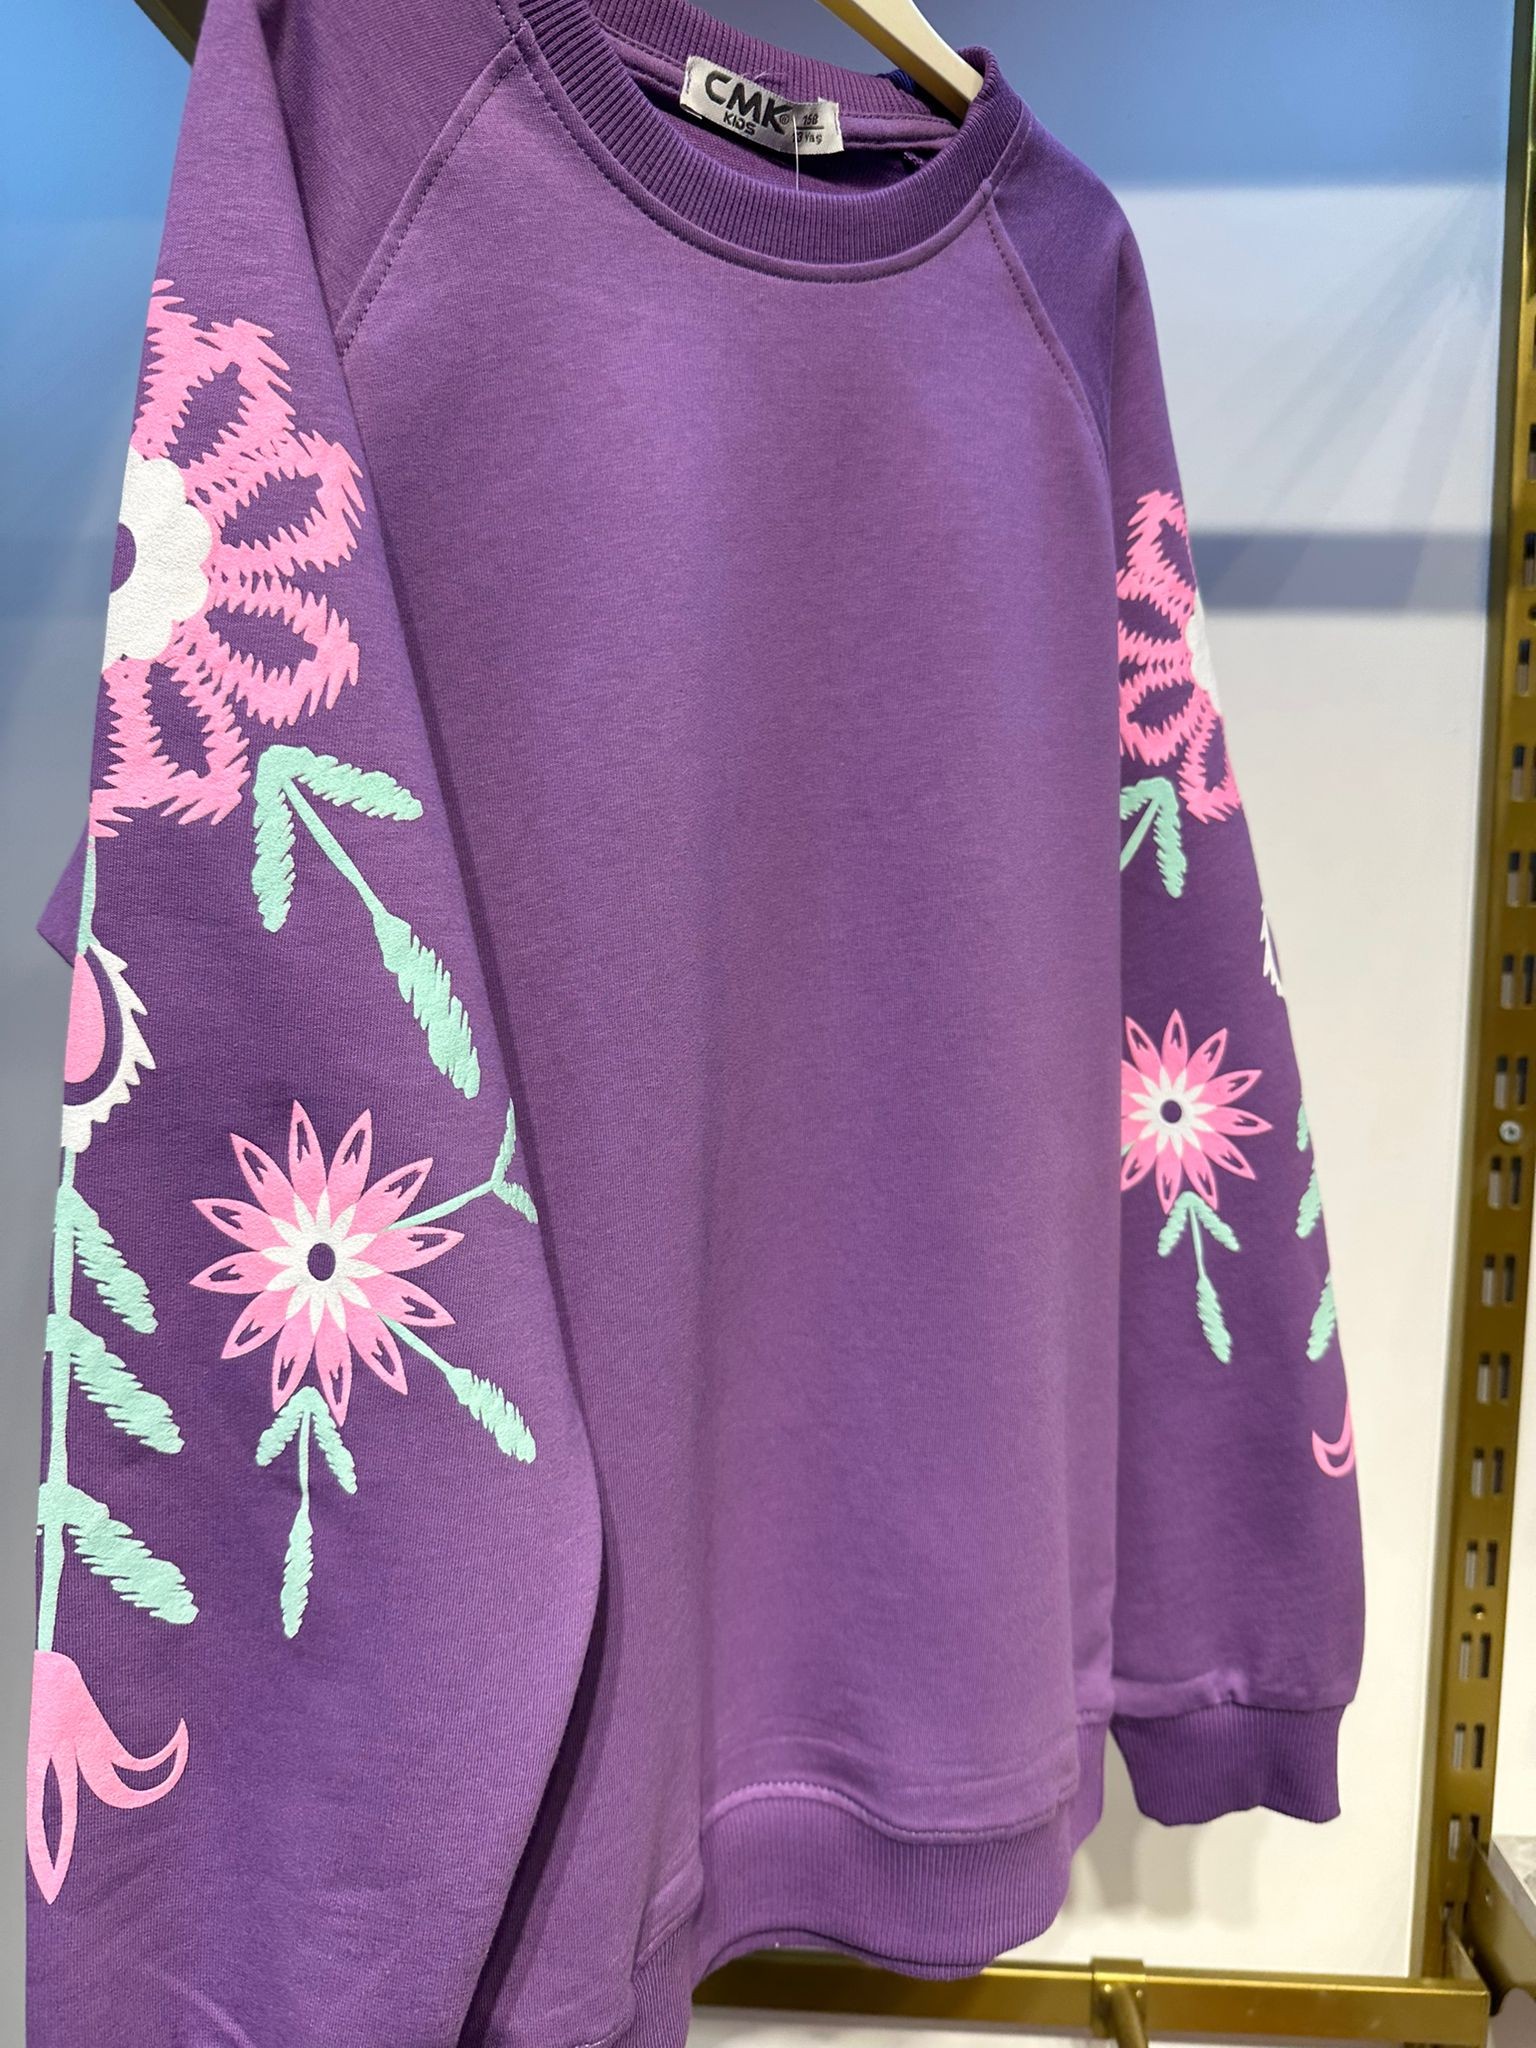 Mor Mevsimlik Kol Çiçek Detaylı Sweatshirt